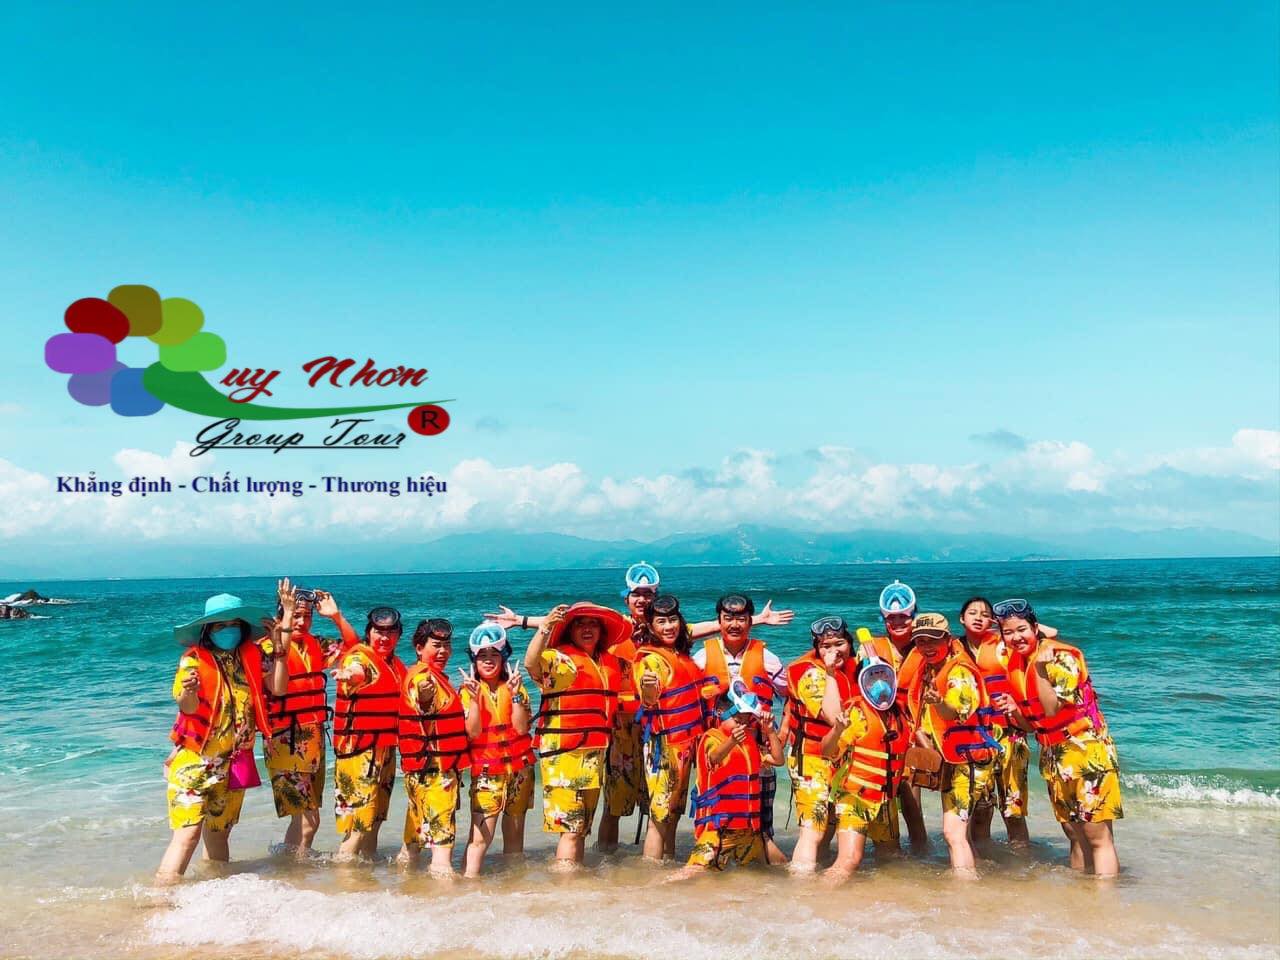 Du lịch Hải Giang Quy Nhơn – Điểm đến du lịch mới tại Quy Nhơn